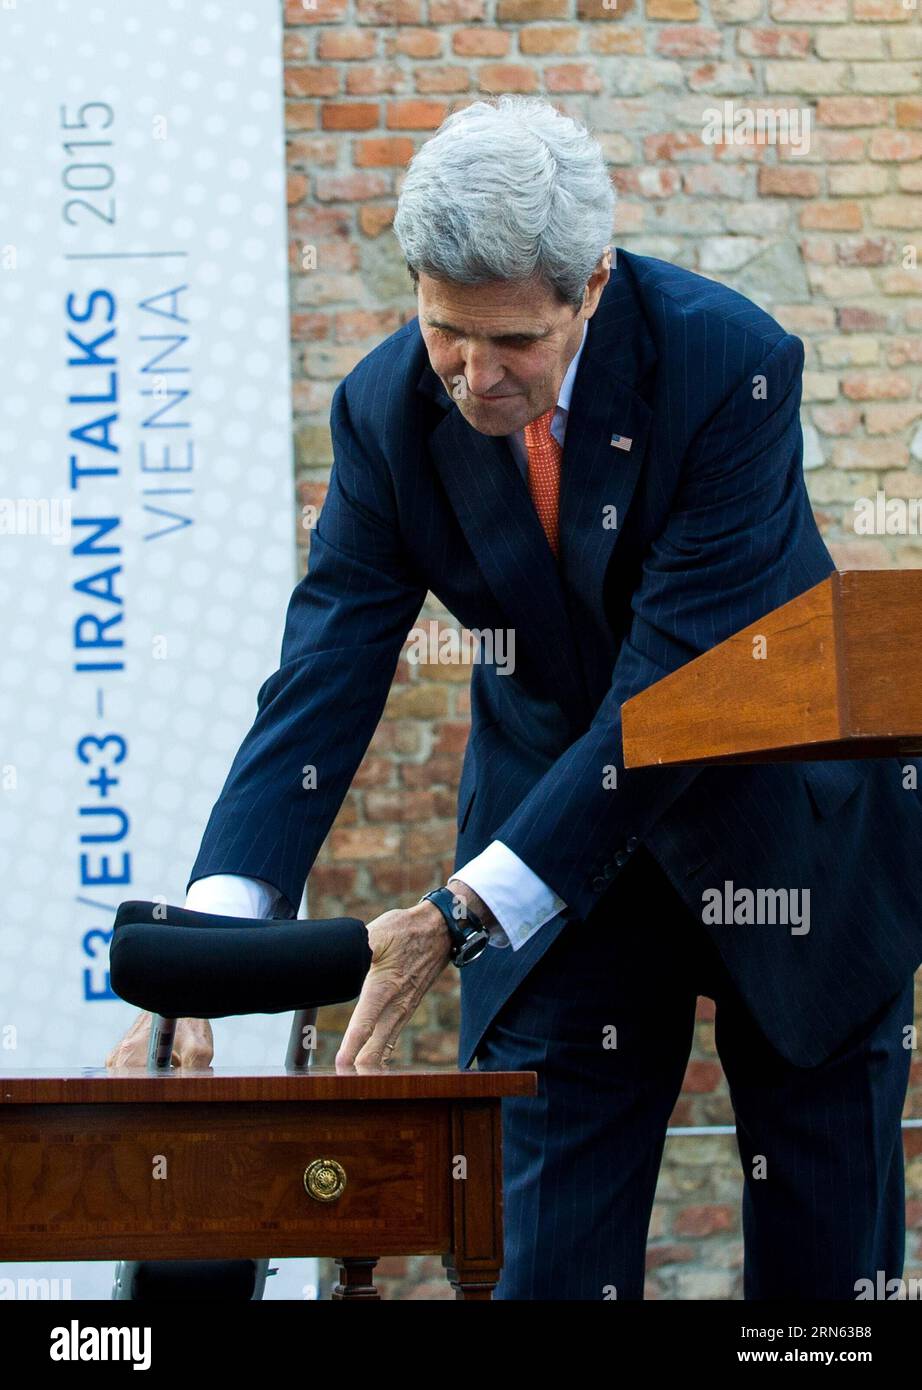 POLITIK Atomgespräche a Wien: PK John Kerry (150709) -- VIENNA, 9 luglio 2015 -- il Segretario di Stato americano John Kerry arriva a una conferenza stampa davanti al Palais Coburg dove si svolgono i colloqui nucleari iraniani, a Vienna, in Austria, il 9 luglio 2015. John Kerry giovedì ha detto che alcune delle questioni difficili rimangono irrisolte nei colloqui nucleari in corso, dicendo che decisioni difficili devono essere prese molto presto. ) AUSTRIA-VIENNA-IRAN COLLOQUI NUCLEARI - JOHN KERRY QianxYi PUBLICATIONxNOTxINxCHN colloqui nucleari politici a Vienna conferenza stampa John Kerry 150709 Vienna 9 luglio 2015 Segretario di Stato Degli Stati Uniti John Kerry Foto Stock